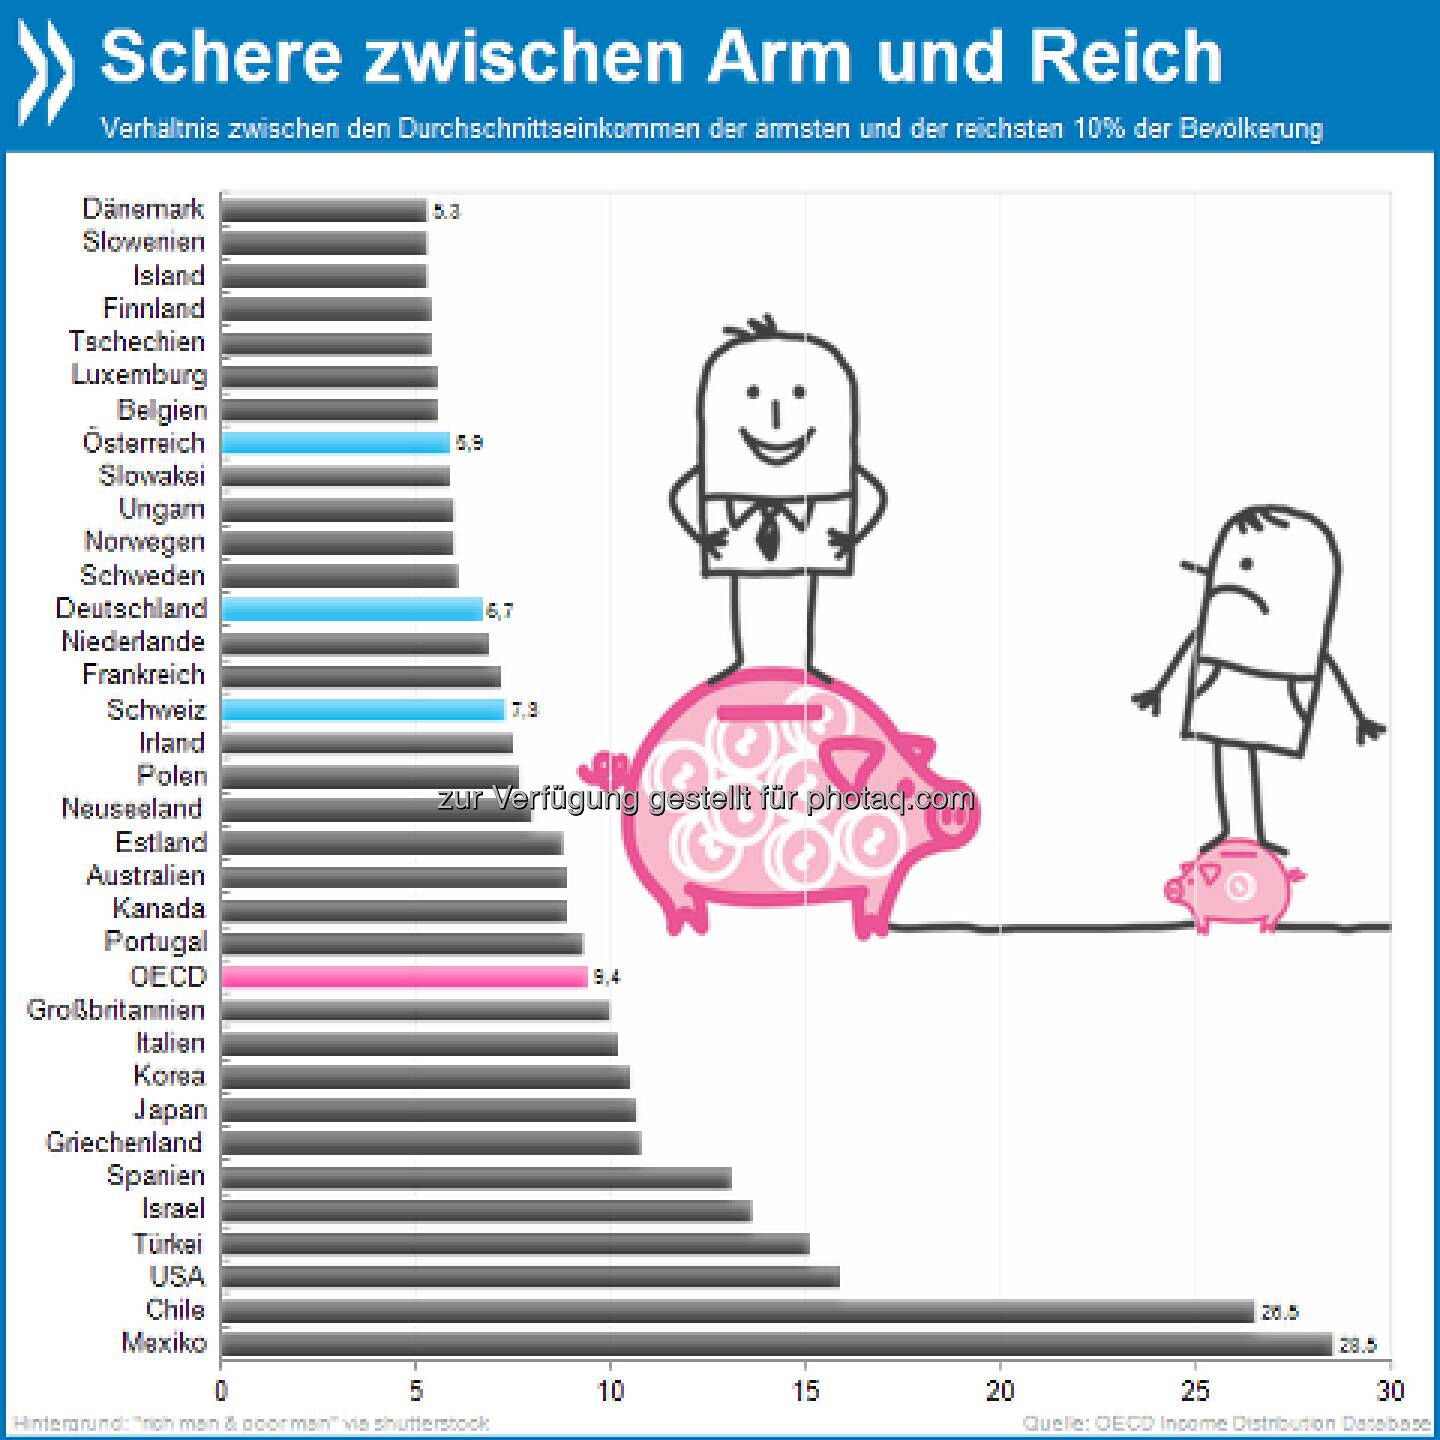 Welten dazwischen: In Österreich verdienen die reichsten zehn Prozent der Bevölkerung im Durchschnitt sechs Mal so viel wie die ärmsten zehn Prozent. In Chile und Mexiko ist die Diskrepanz vier bis fünfmal so hoch.

Mehr Infos unter http://bit.ly/10pi3An